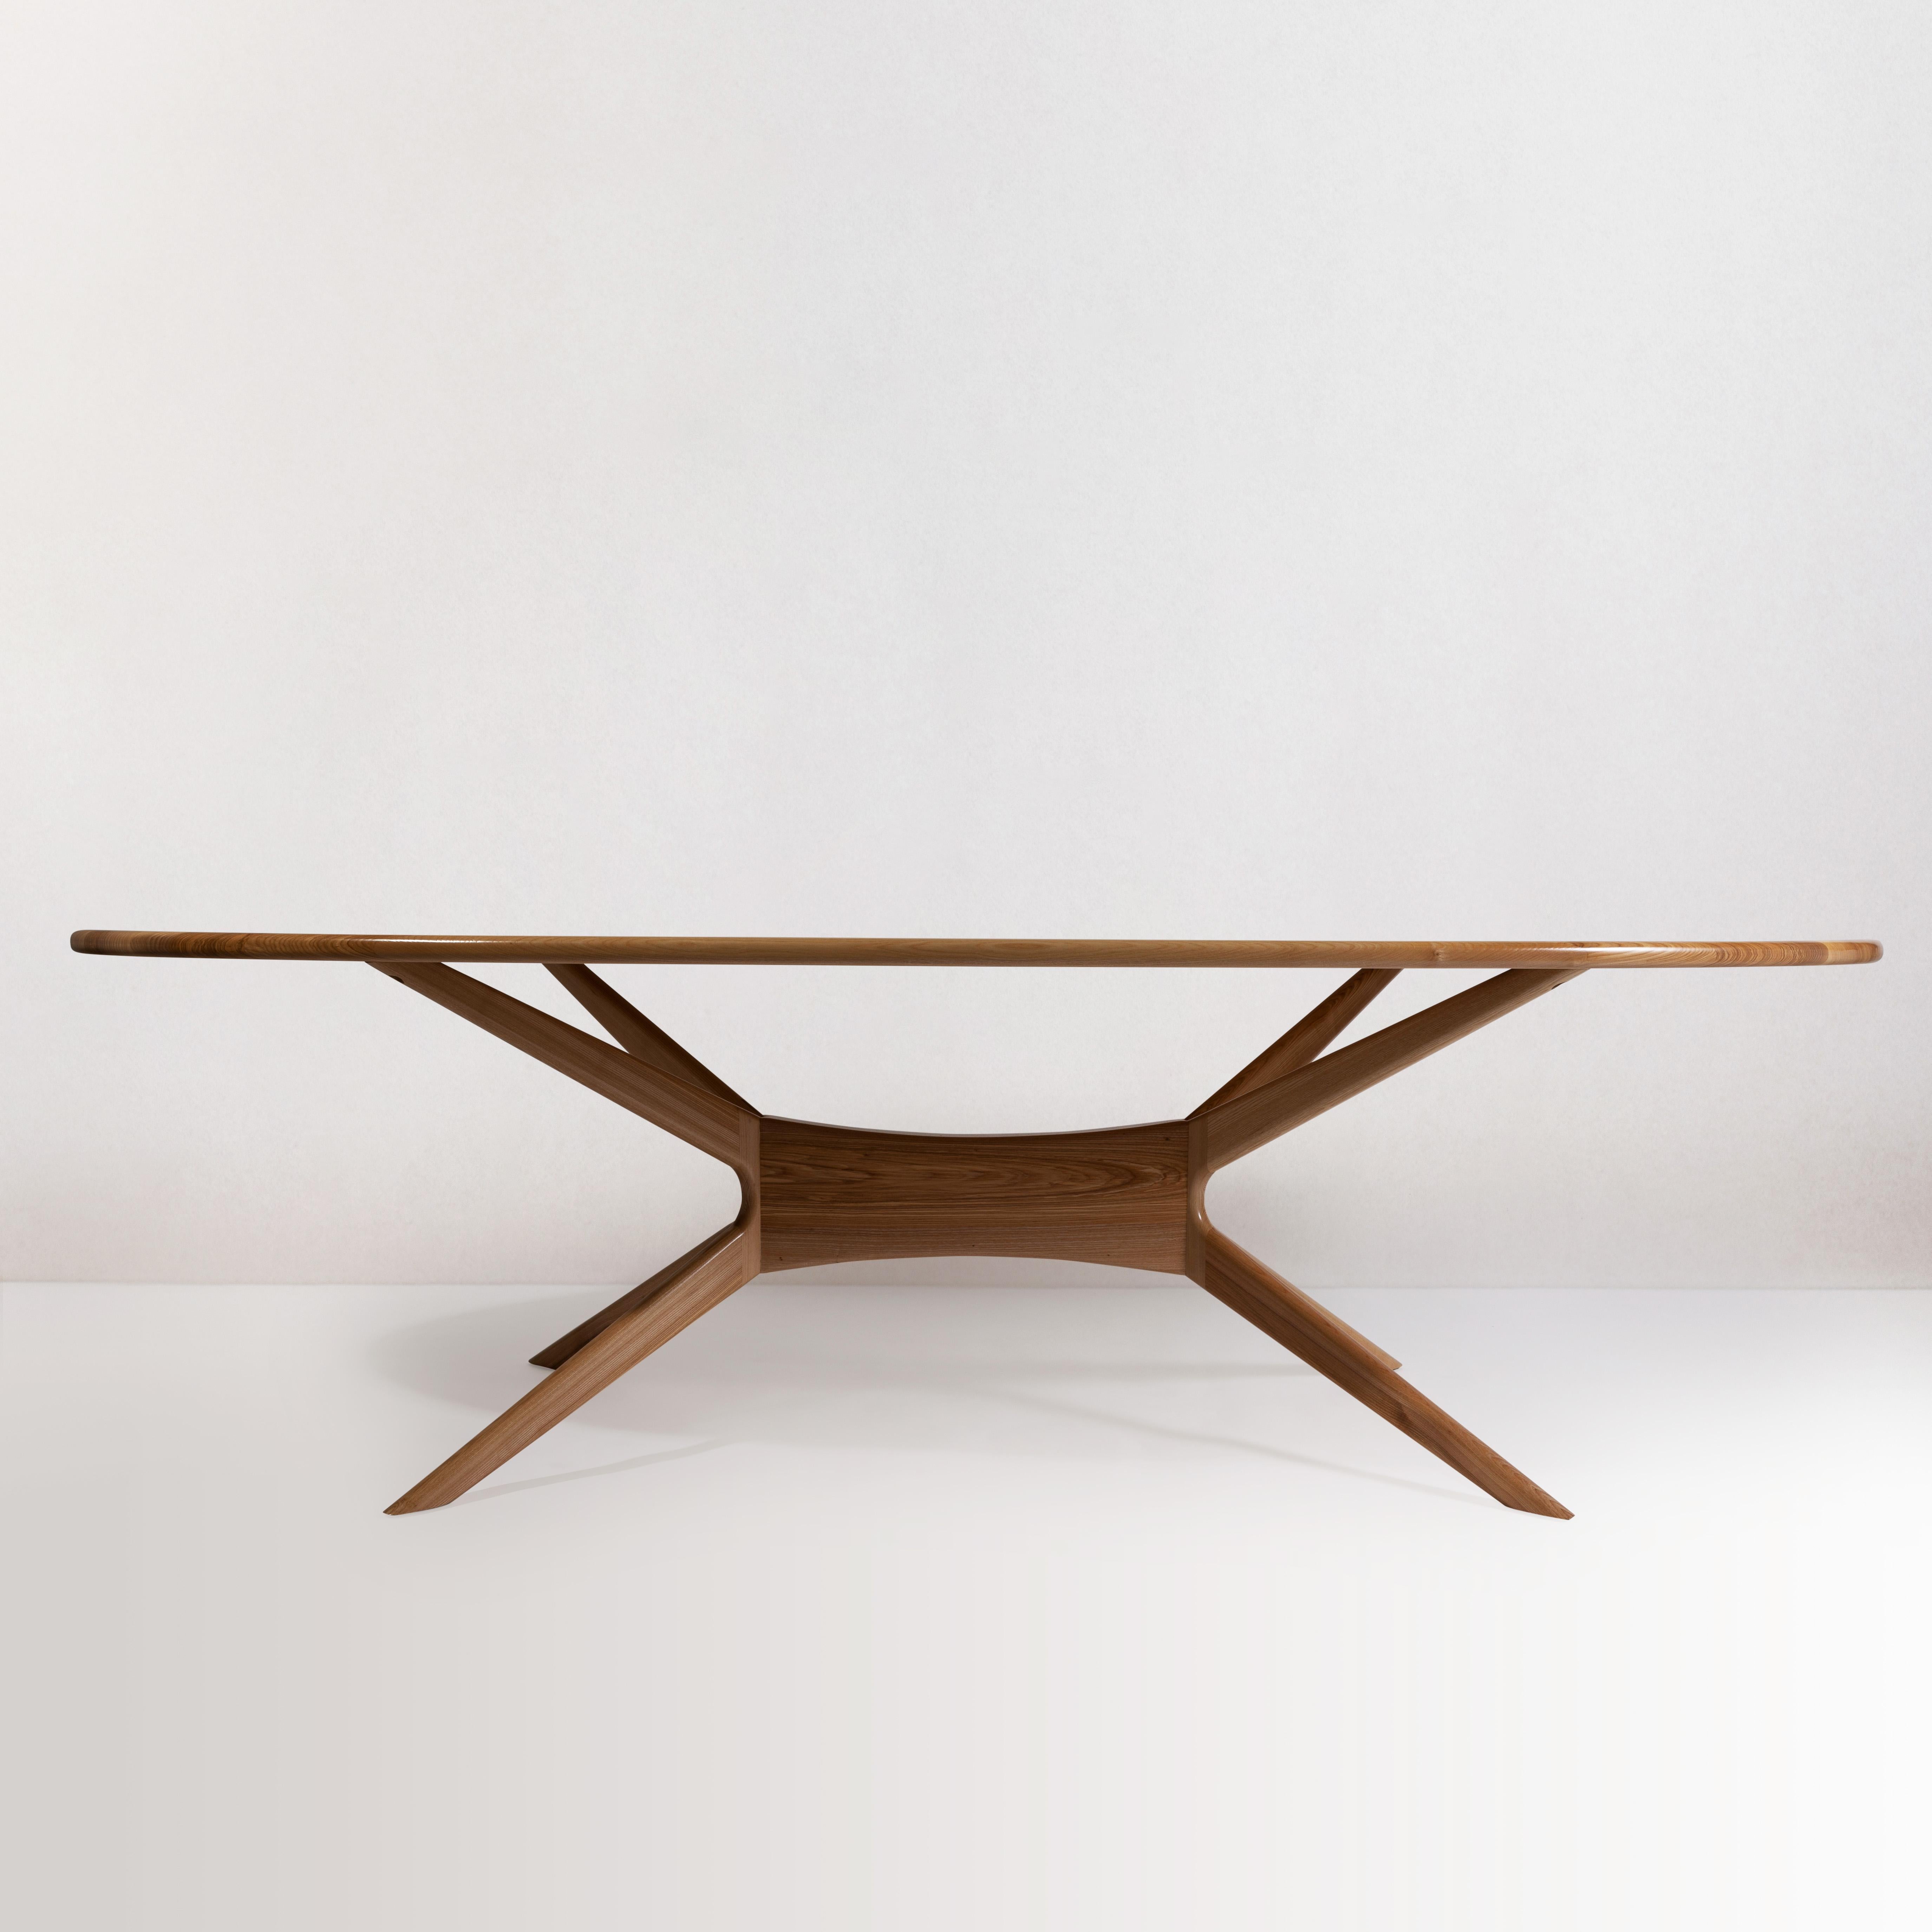 Der luxuriöse Esszimmertisch Elmond im modernen Stil bietet ein einzigartiges Design mit einem langen, ovalen Tisch, an dem acht Personen bequem Platz finden. Ein Tisch, der sich perfekt für Mahlzeiten und Gespräche eignet, die über Generationen